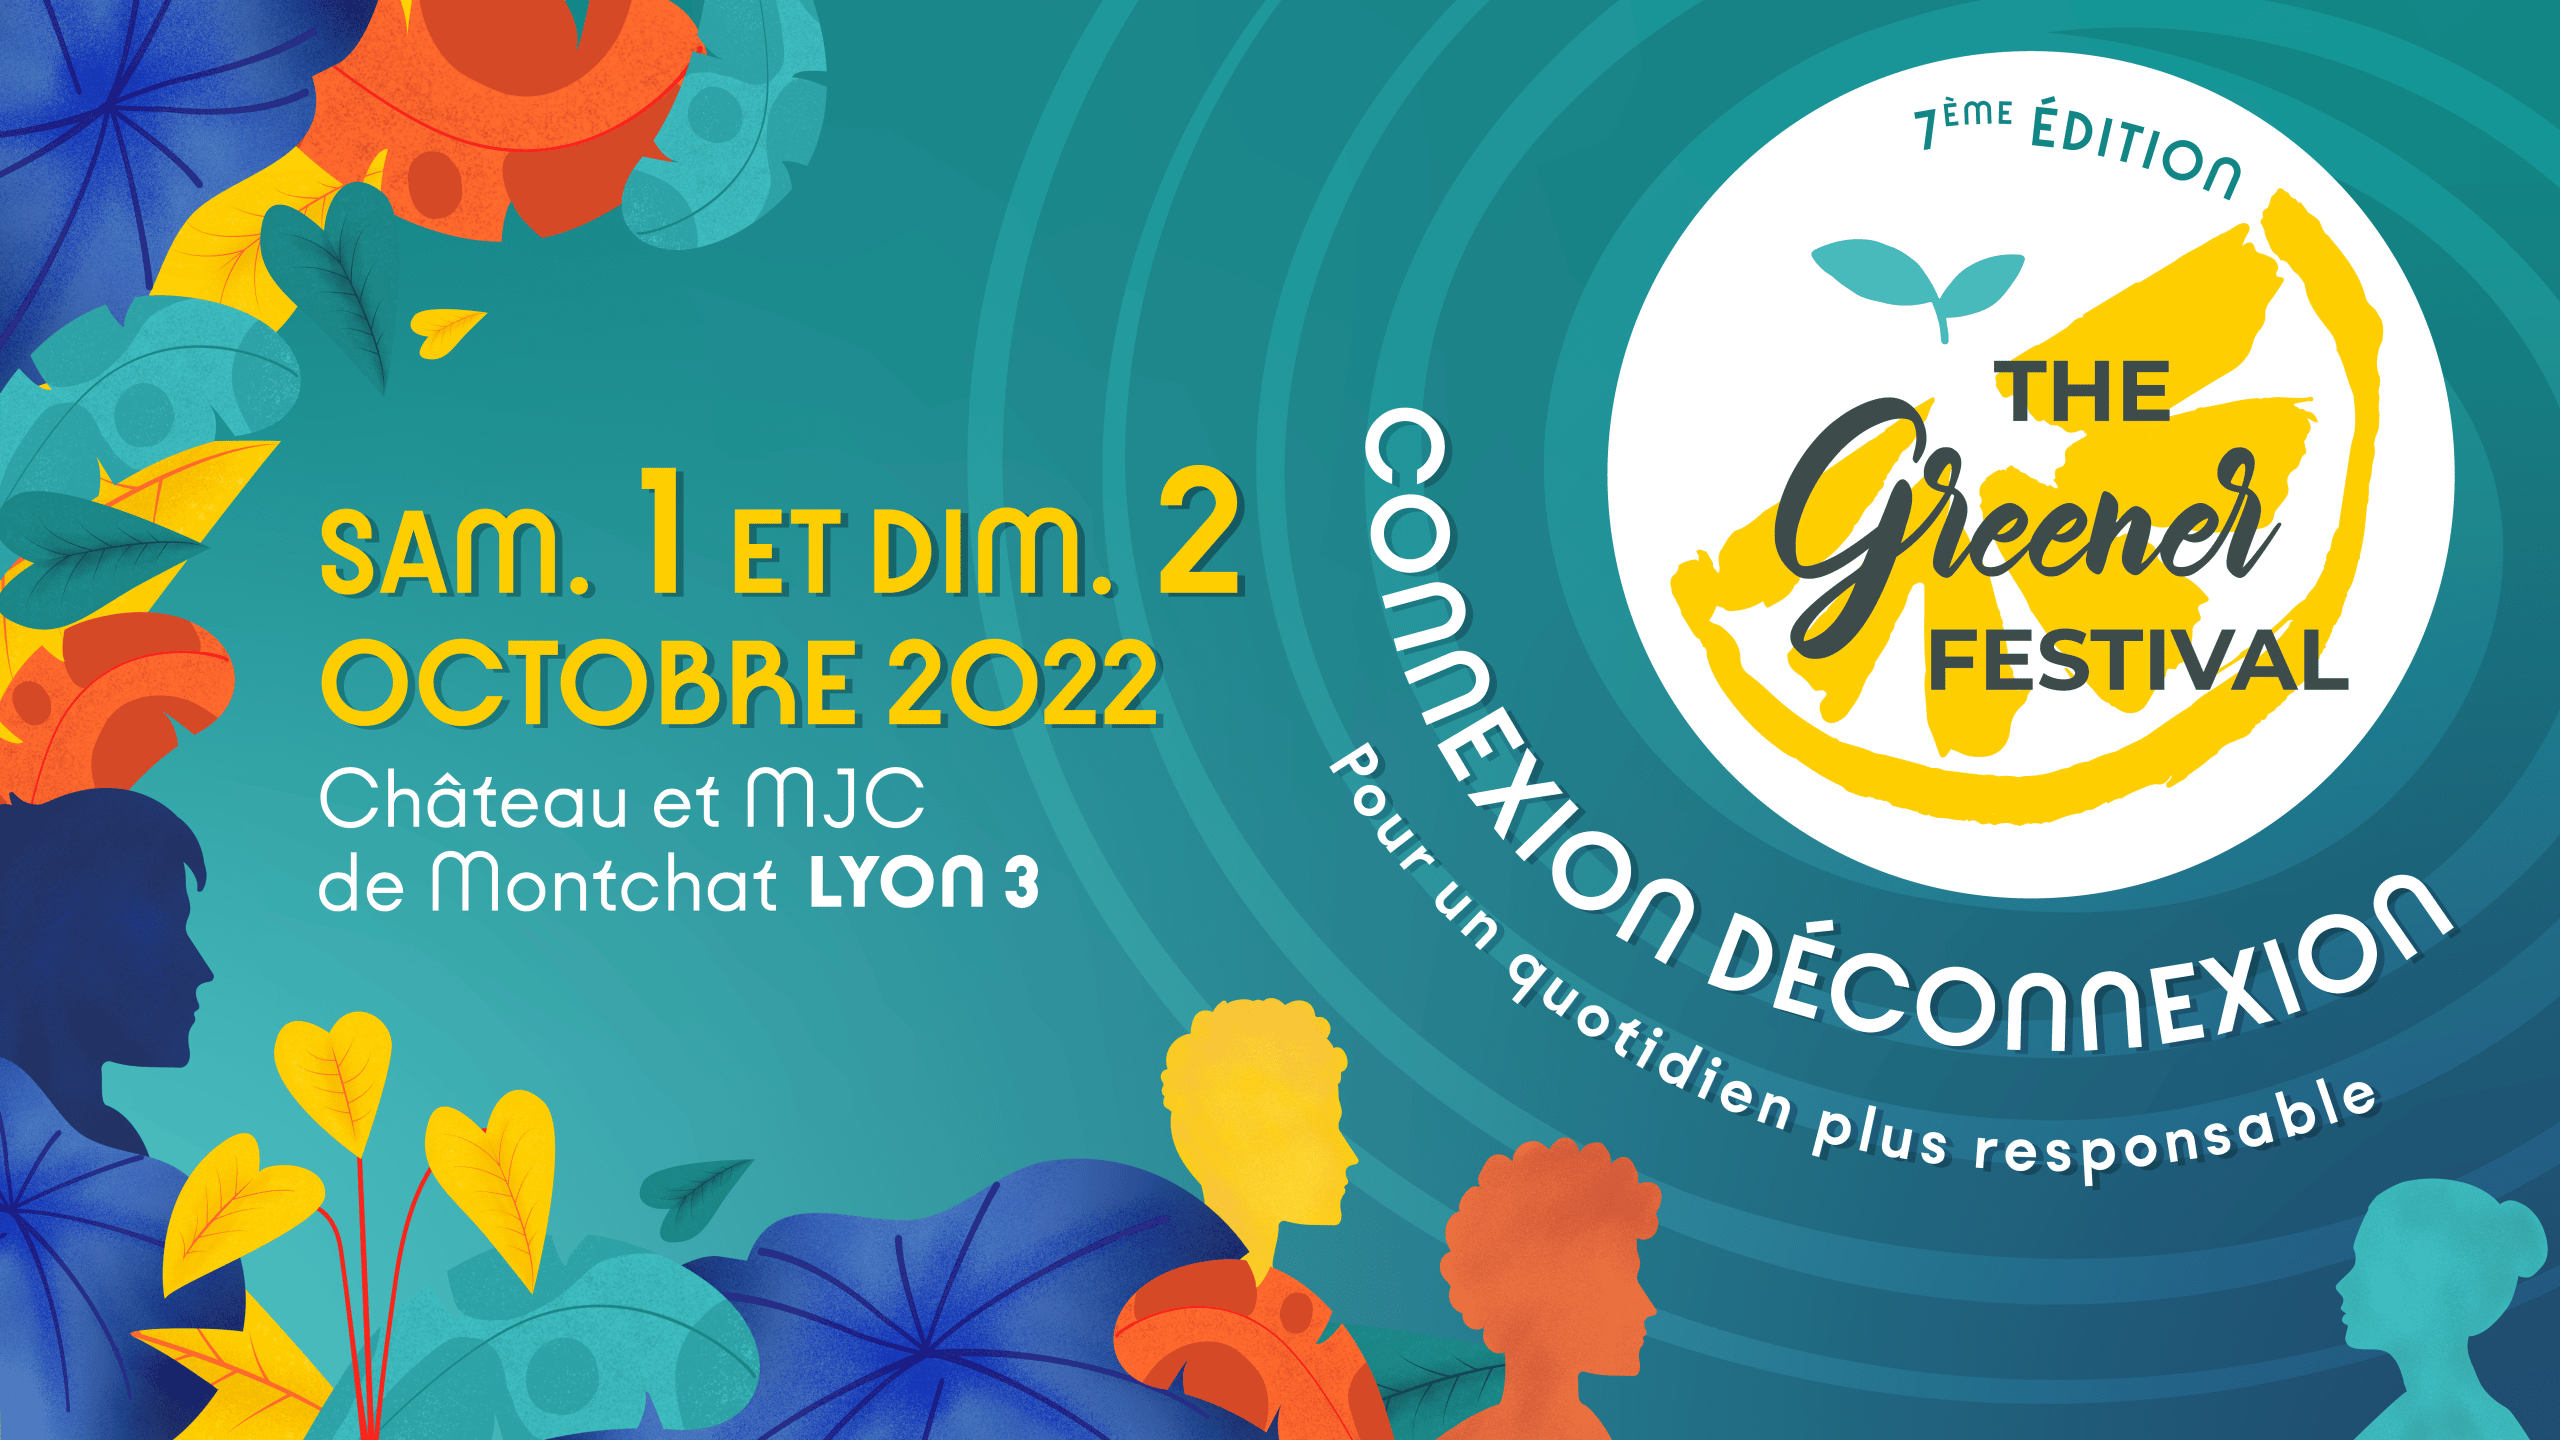 Bannière de la 7ème édition du Greener Festival 2022